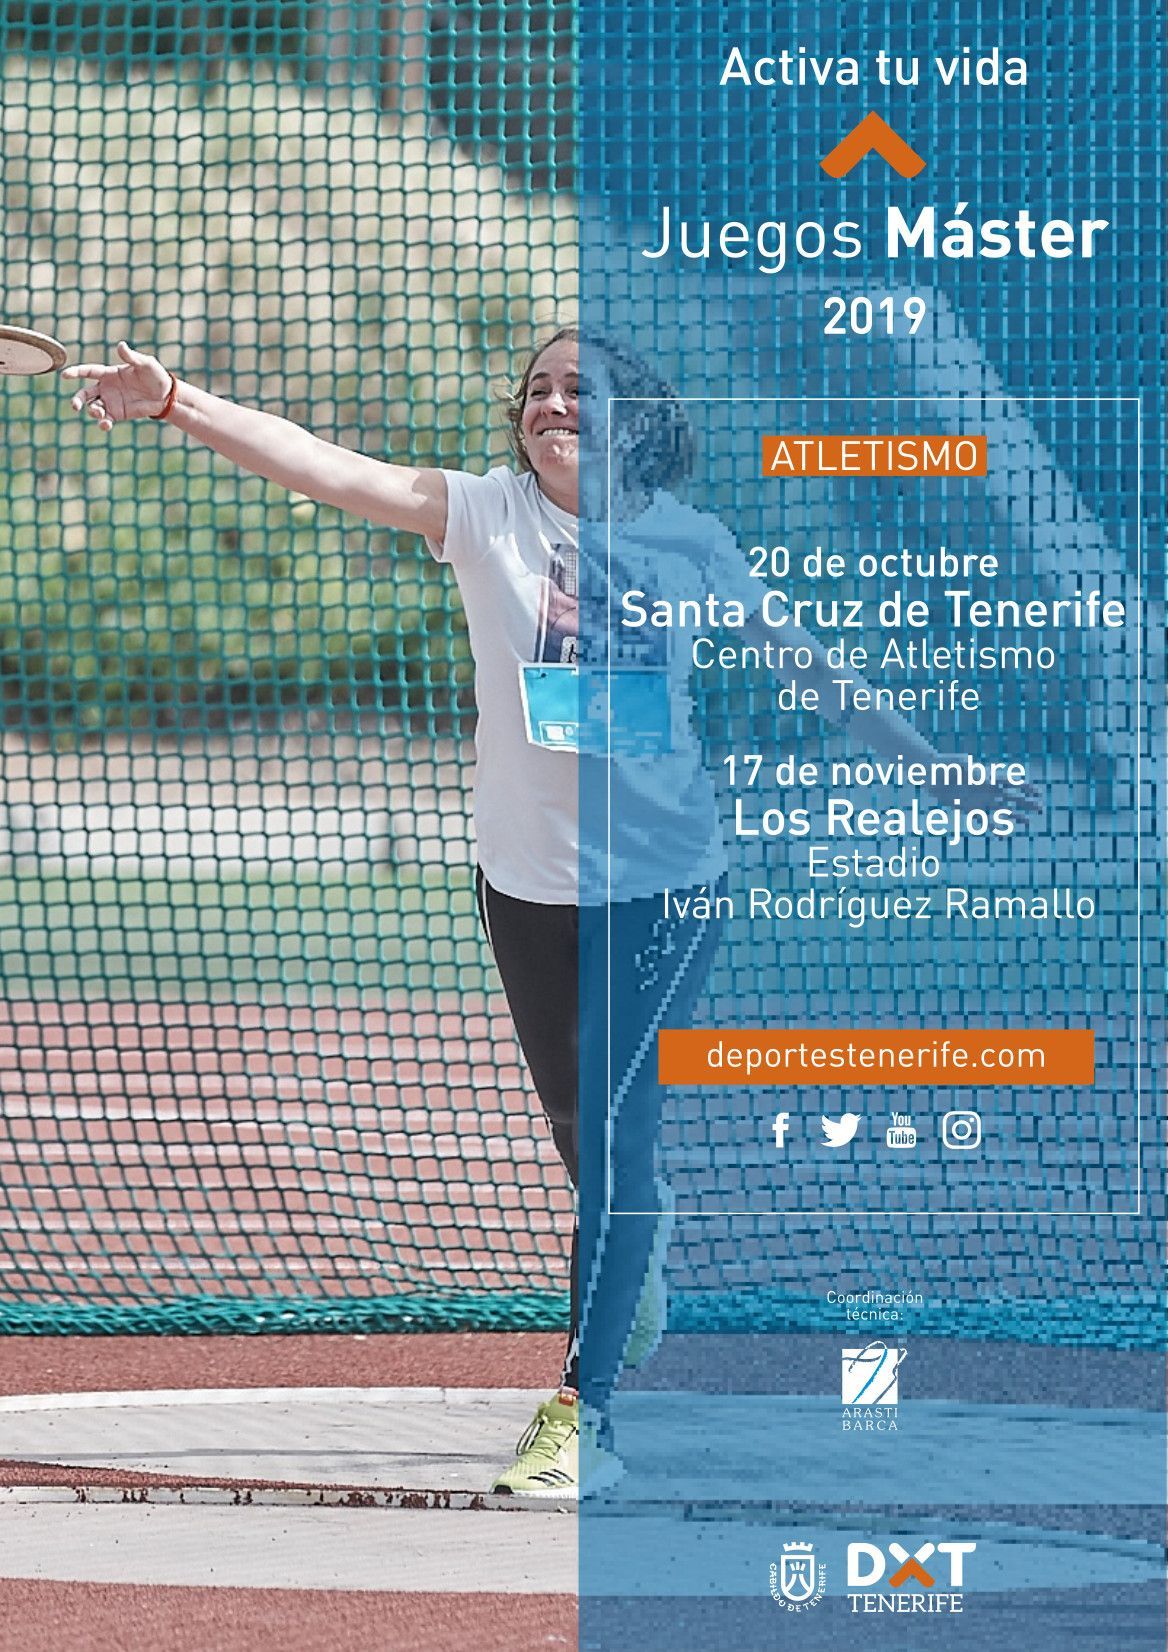 Atletismo Juegos Máster 2019